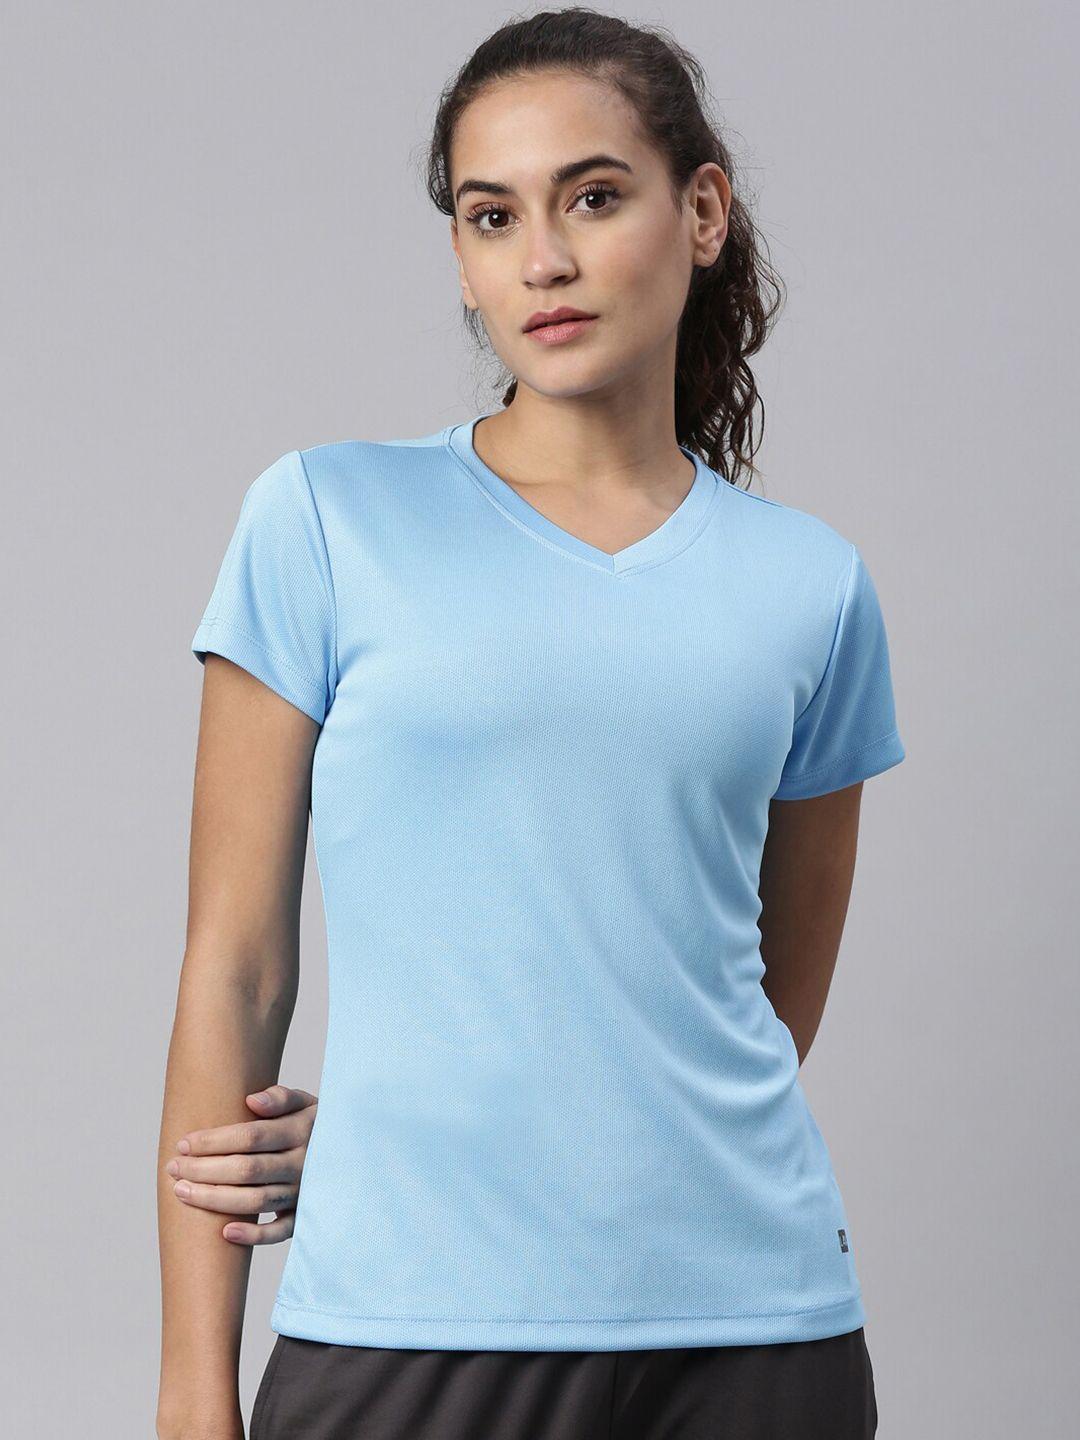 laya women turquoise blue v-neck training or gym sports t-shirt